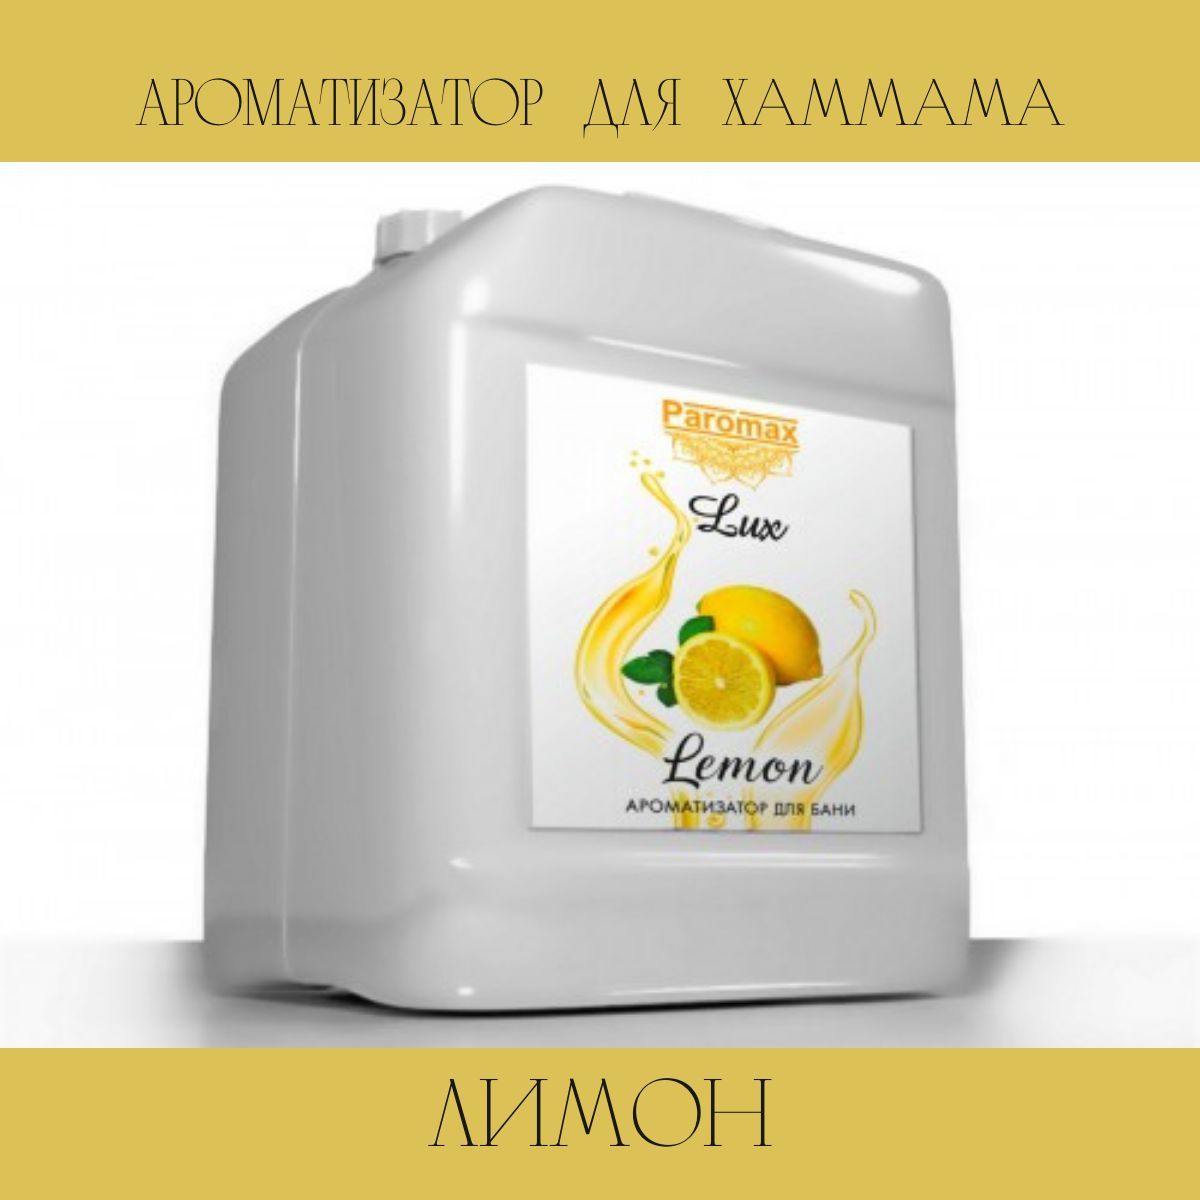 Ароматизатор для бани лимон Паромакс Люкс 26575 5 л